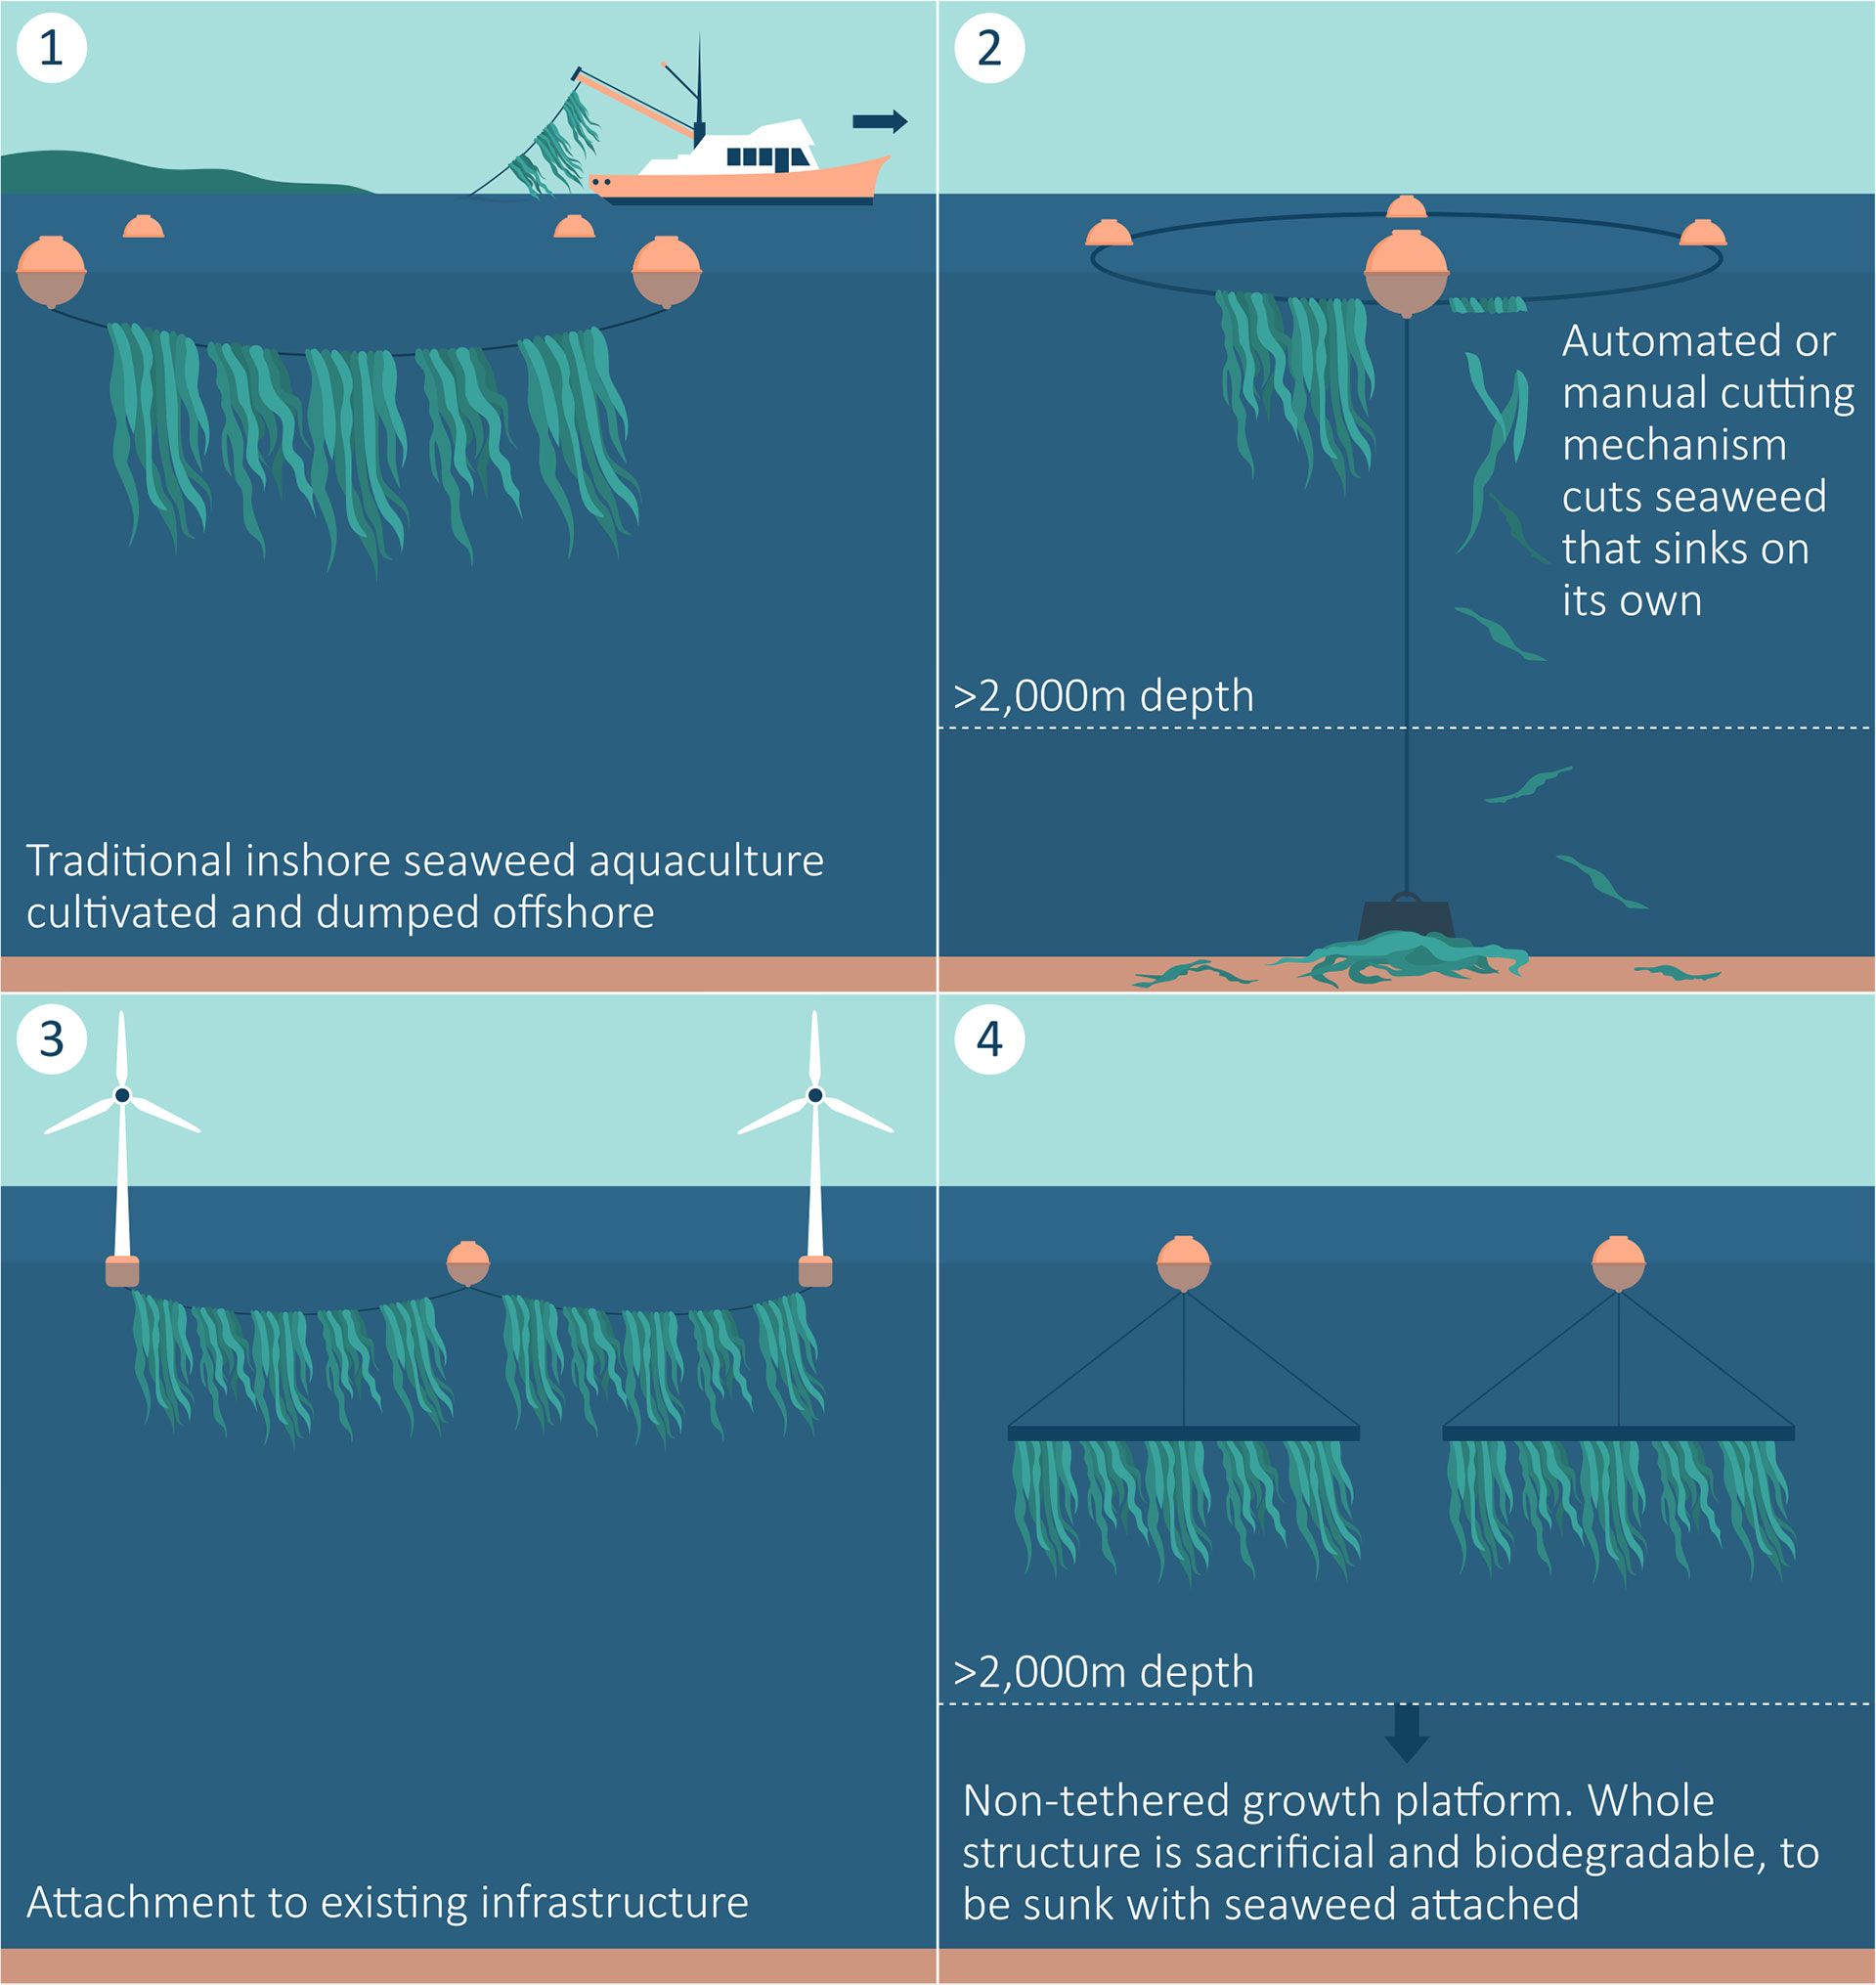 coralline algae structures attachment